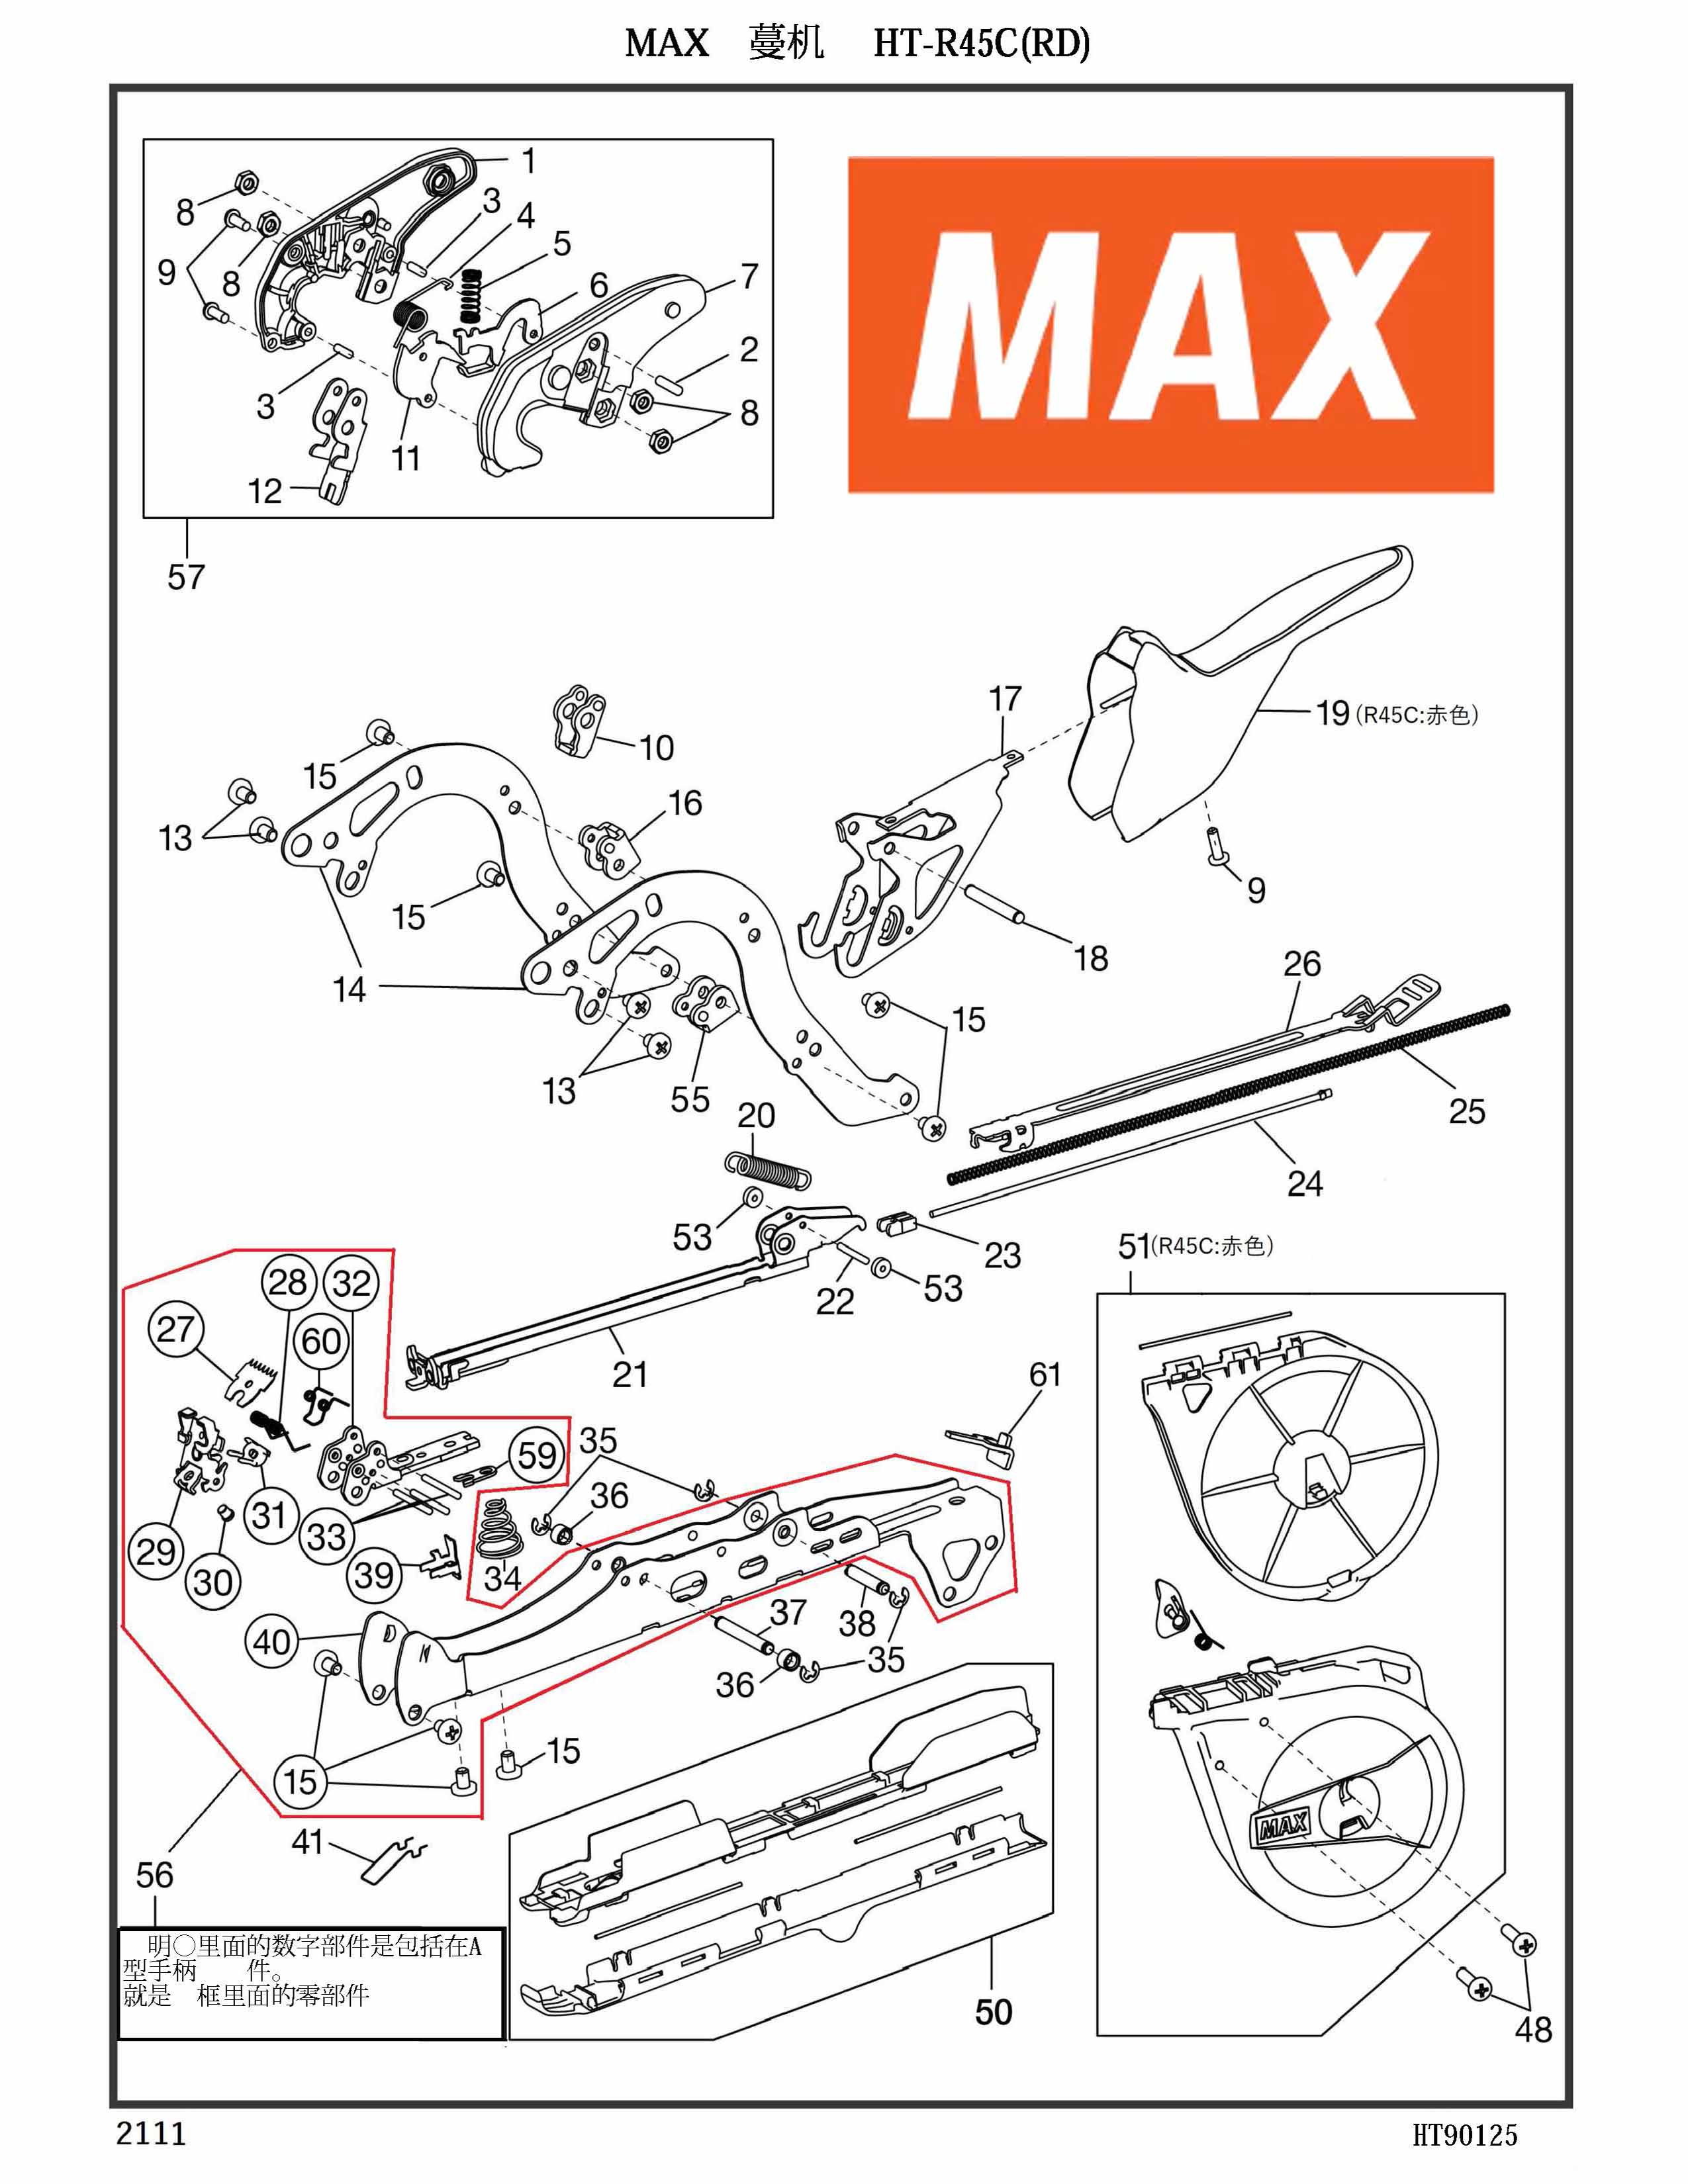 MAX Tapener Part HT11788 A HANDLE S(R45C) Fits MAX HT-R45L(O) R45C(RD) #40